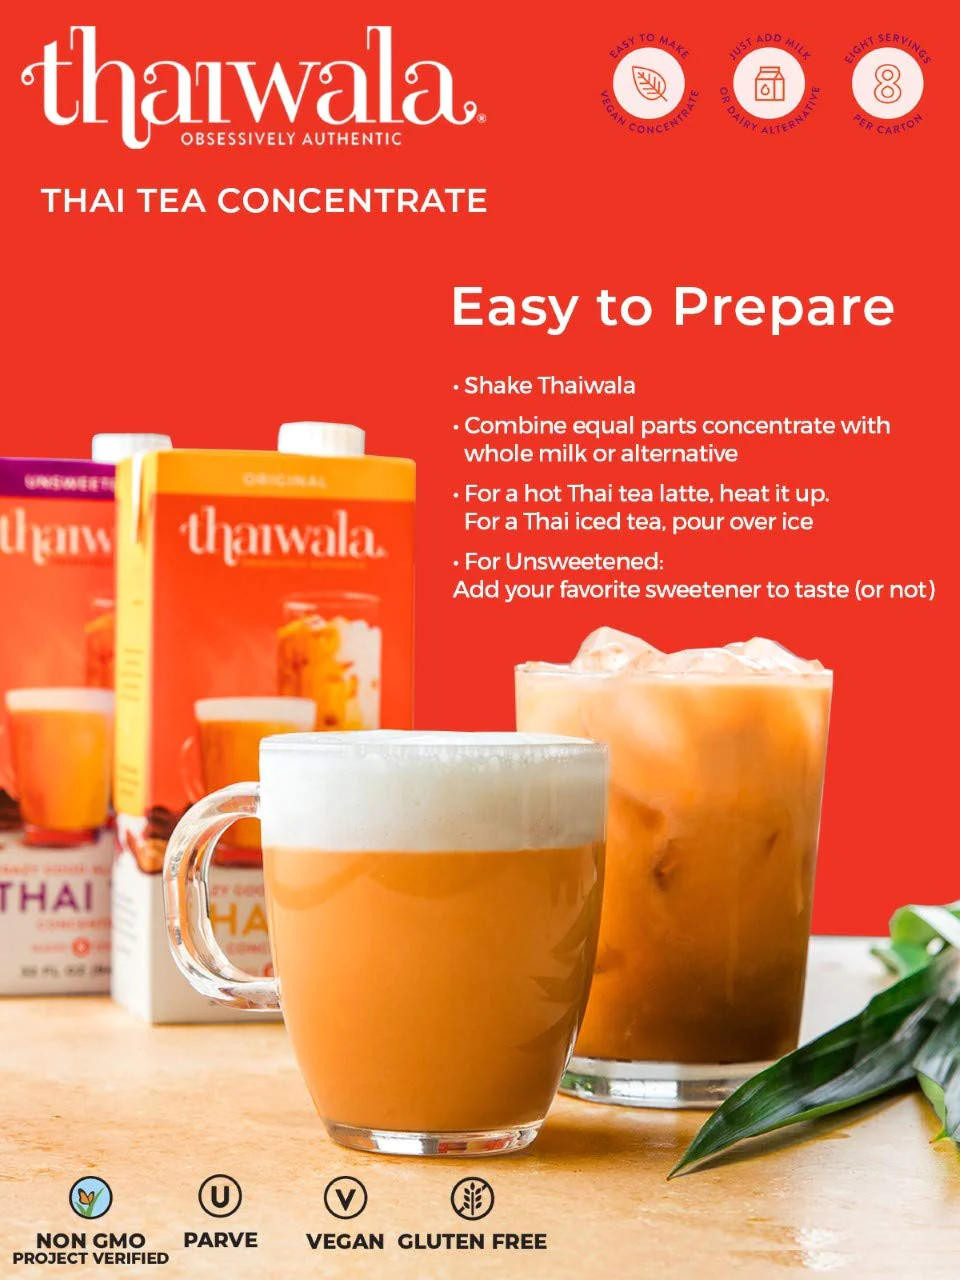 THAIWALA Thaiwala Original Thai Black Tea 1:1 Concentrate - 946ml (32 fl. oz) - Authentic Flavor (12/case) 